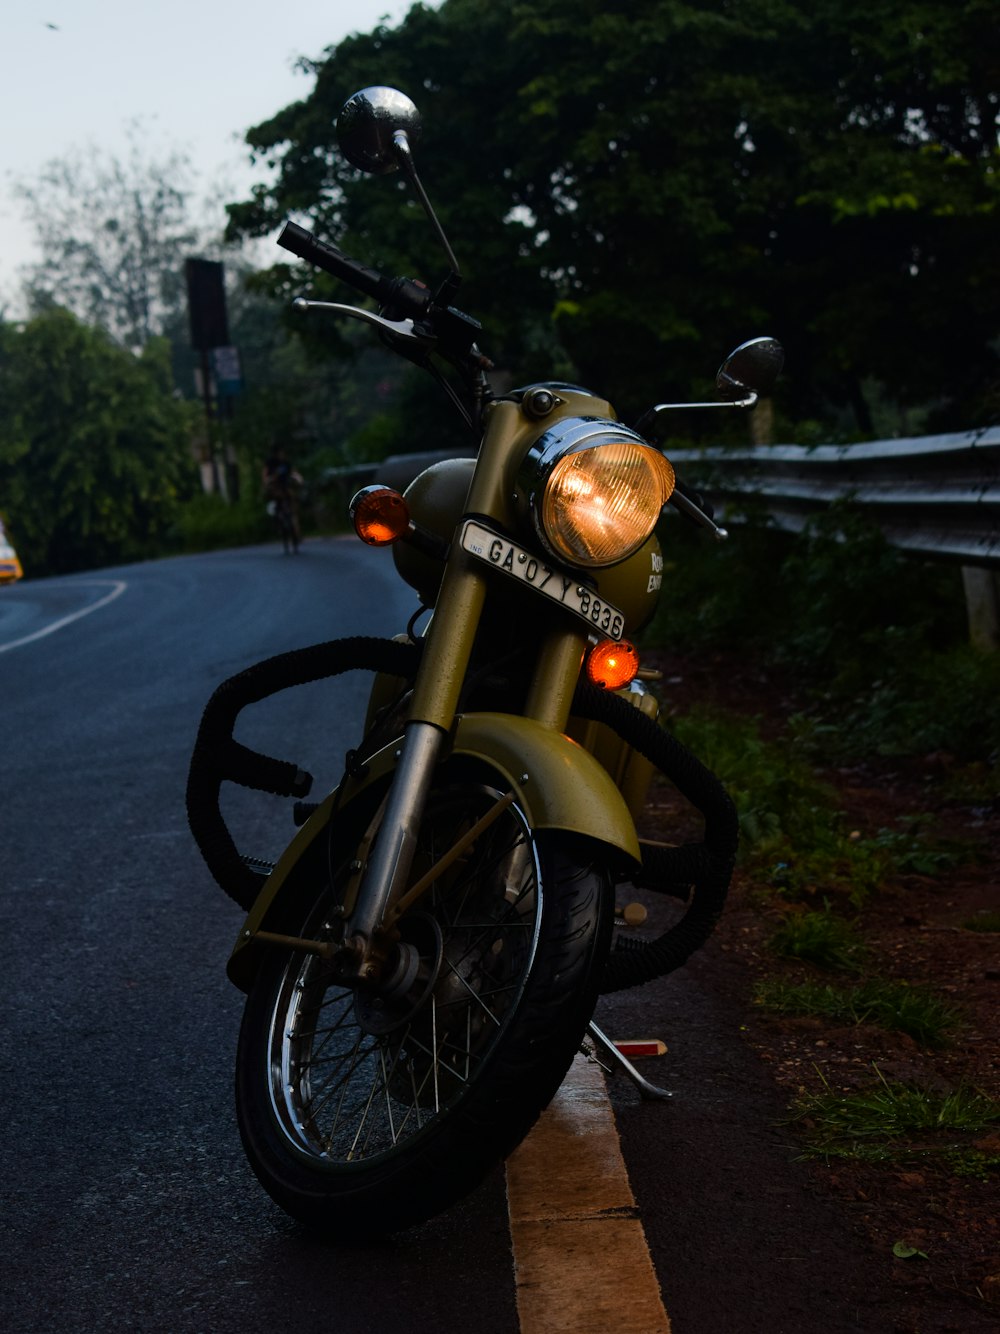 Motocicletta arancione e nera parcheggiata sul ciglio della strada